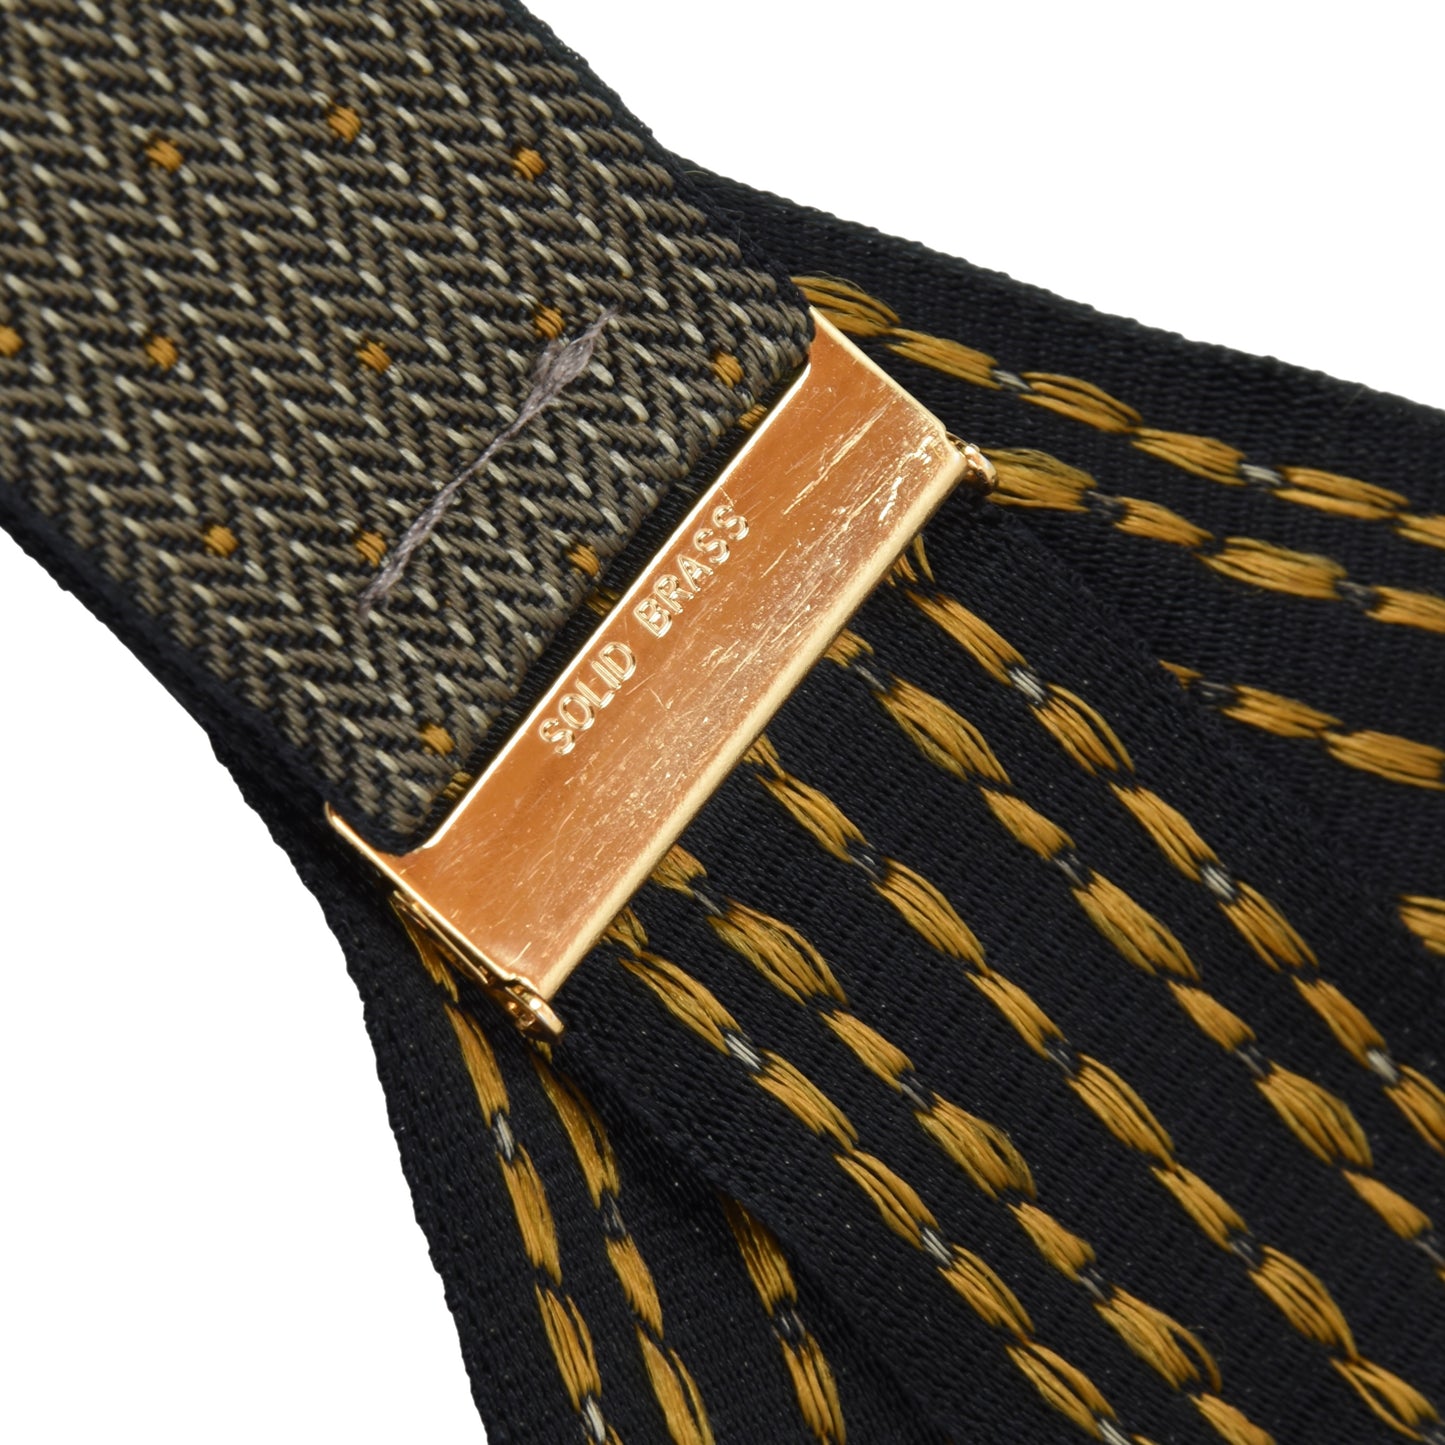 Classic Martin Dingman Braces/Suspenders -  Herringbone